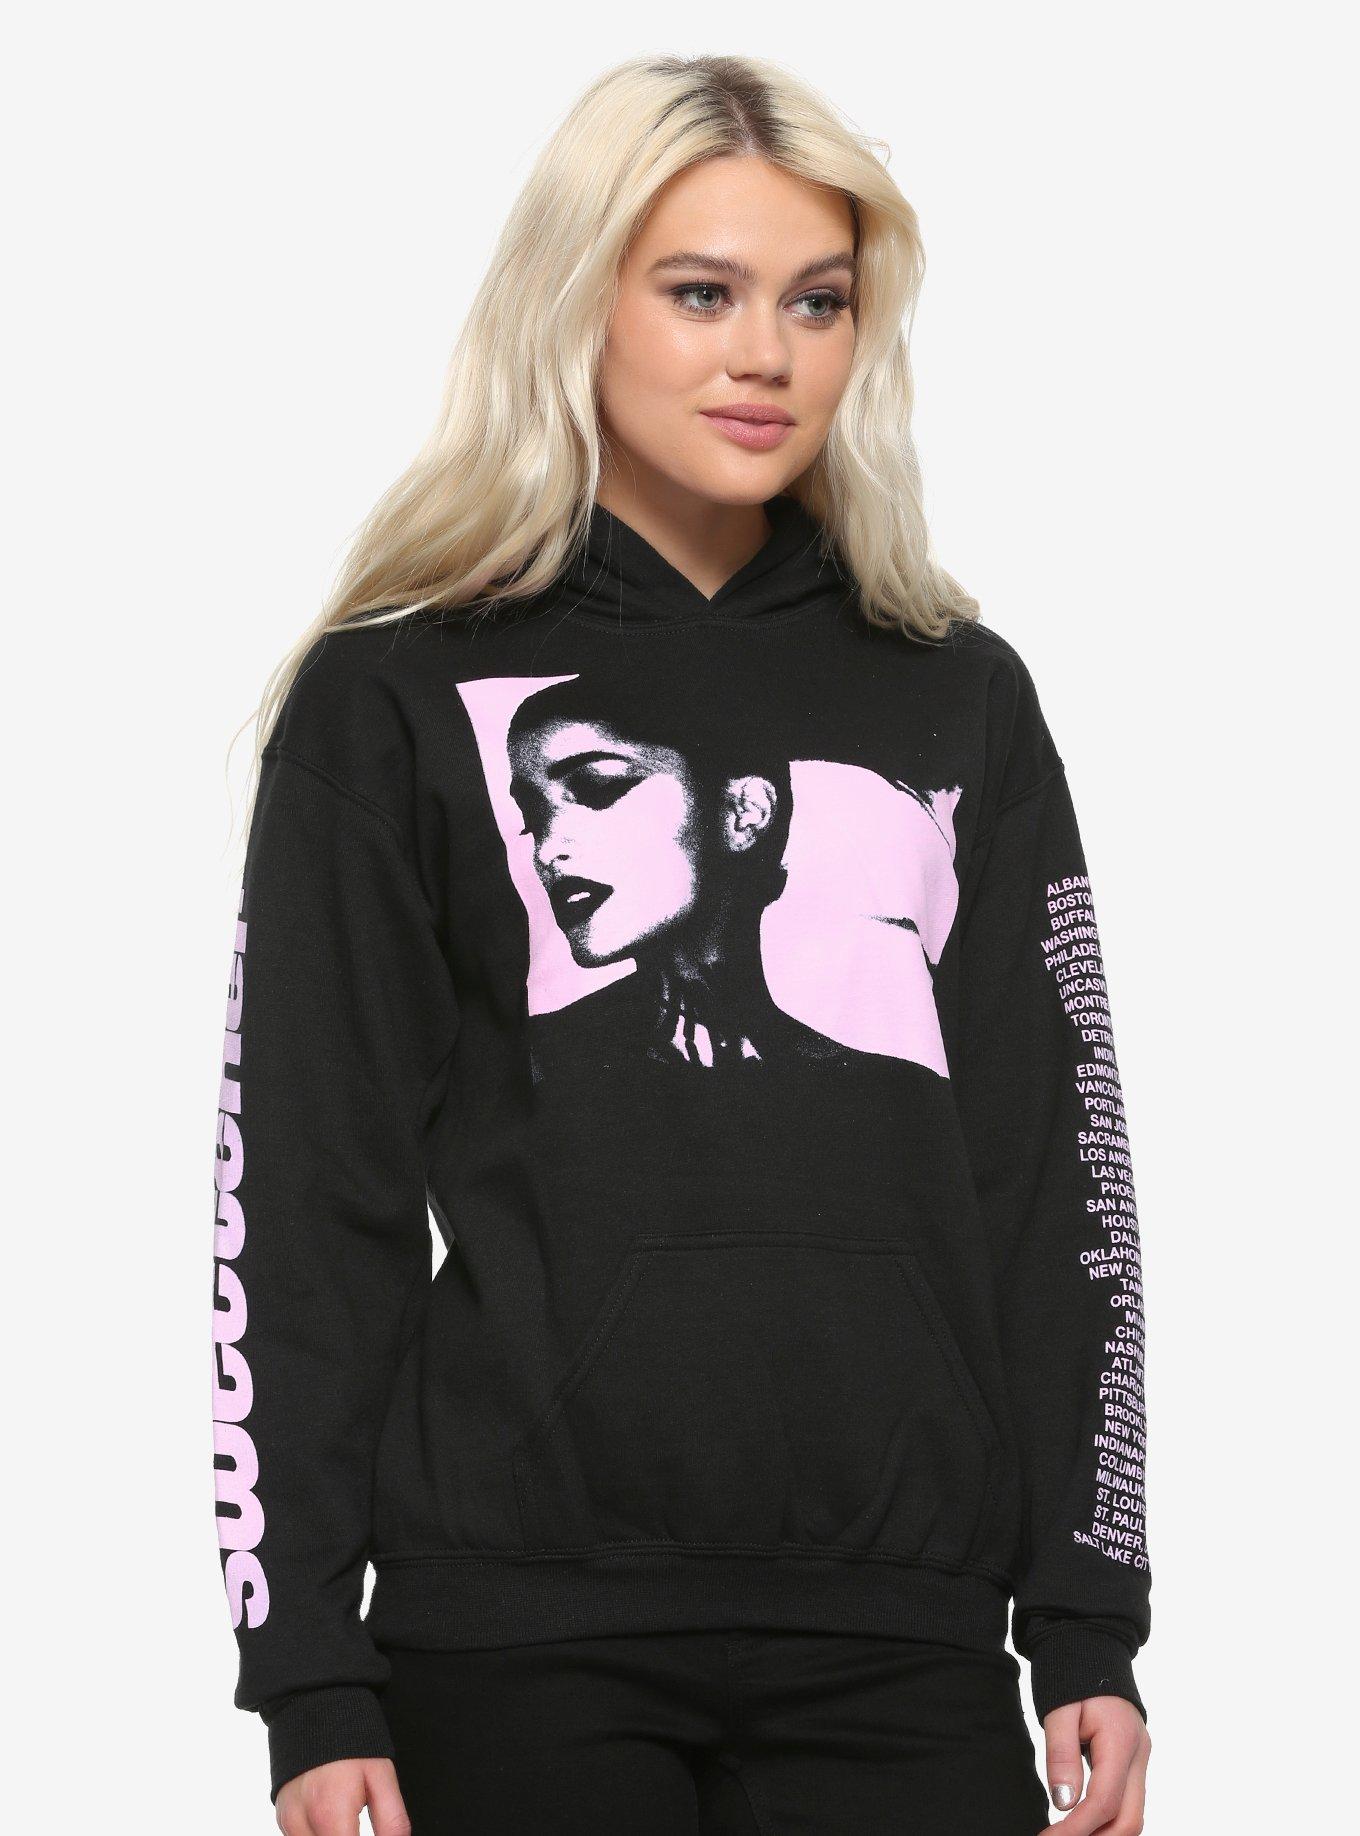 Ariana Grande Hoodie Womens Small Black Sweatshirt Sweetener Tour